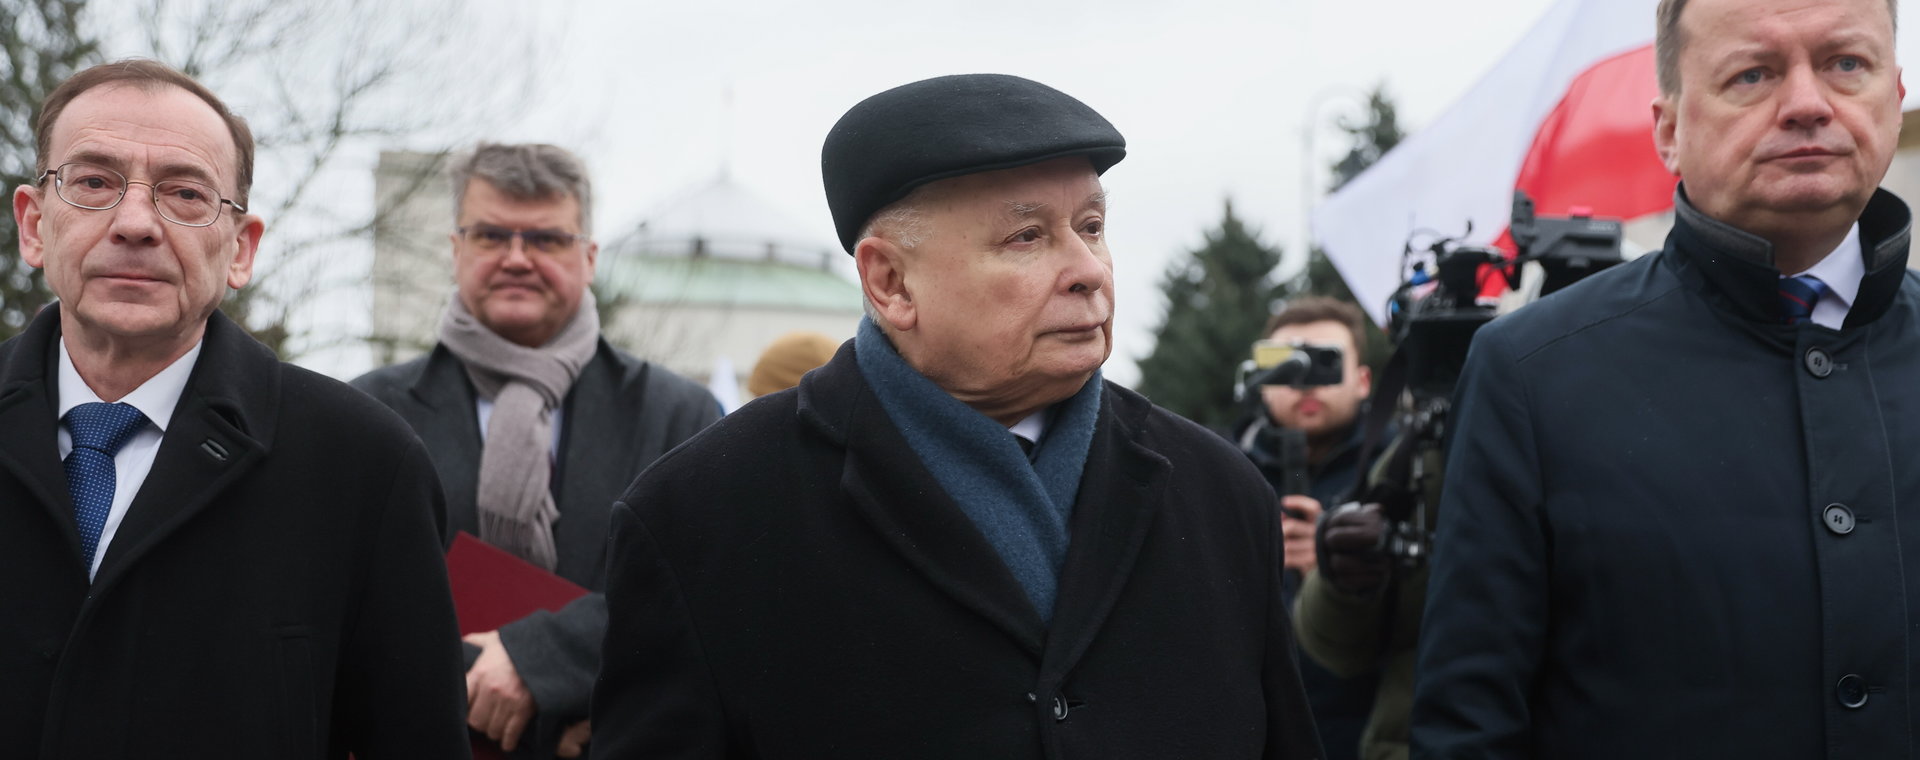 Partia Jarosława Kaczyńskiego chce, aby Sejm potępił działania koalicji 15 października, w tym te wobec Mariusza Kamińskiego i Macieja Wąsika.